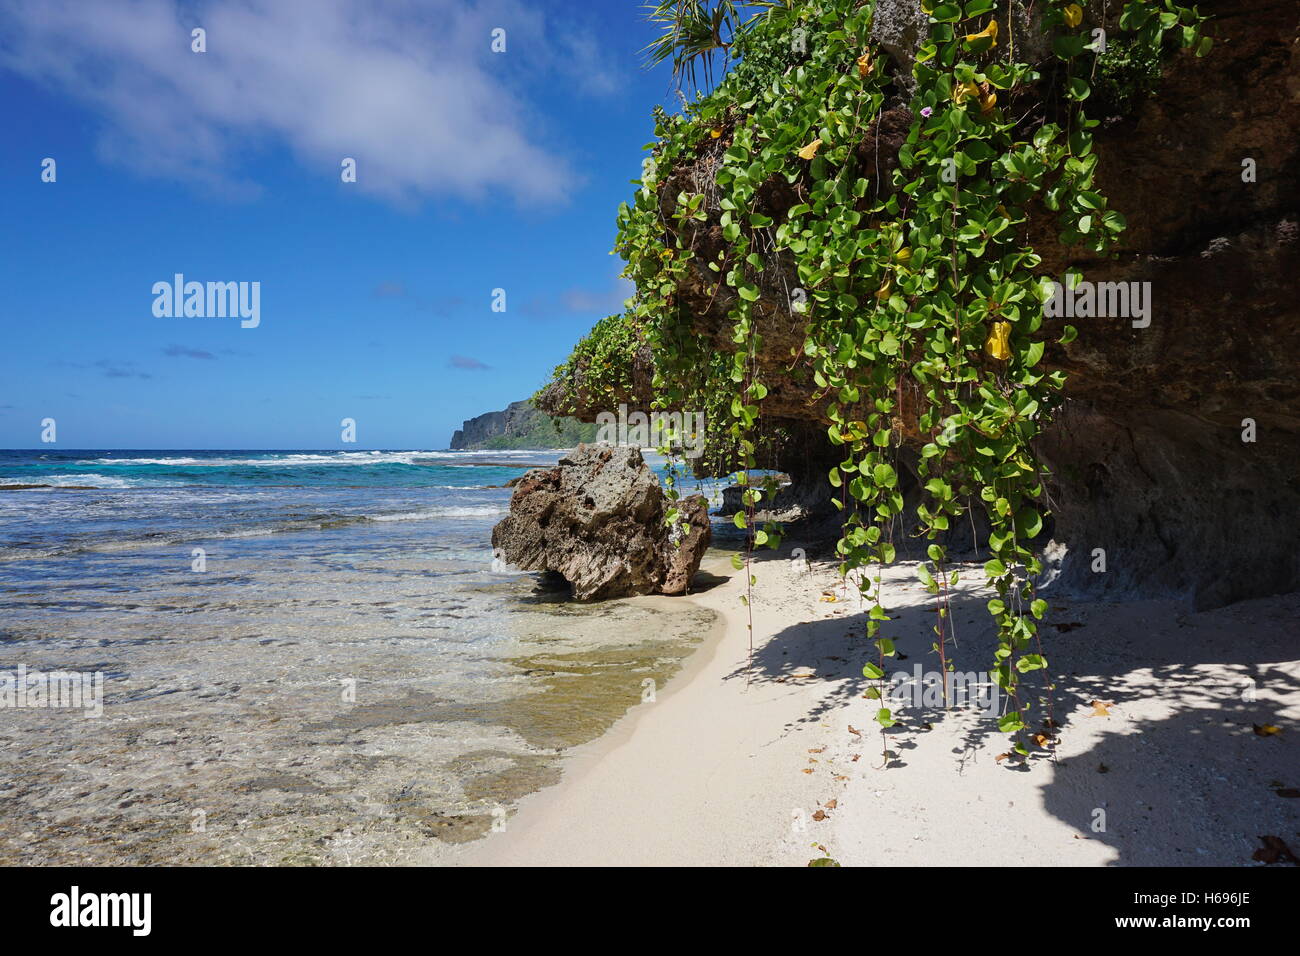 Mare con pianta rampicante che pendono verso il basso dalle rocce, Rurutu island, oceano pacifico del sud, Austral, Polinesia Francese Foto Stock